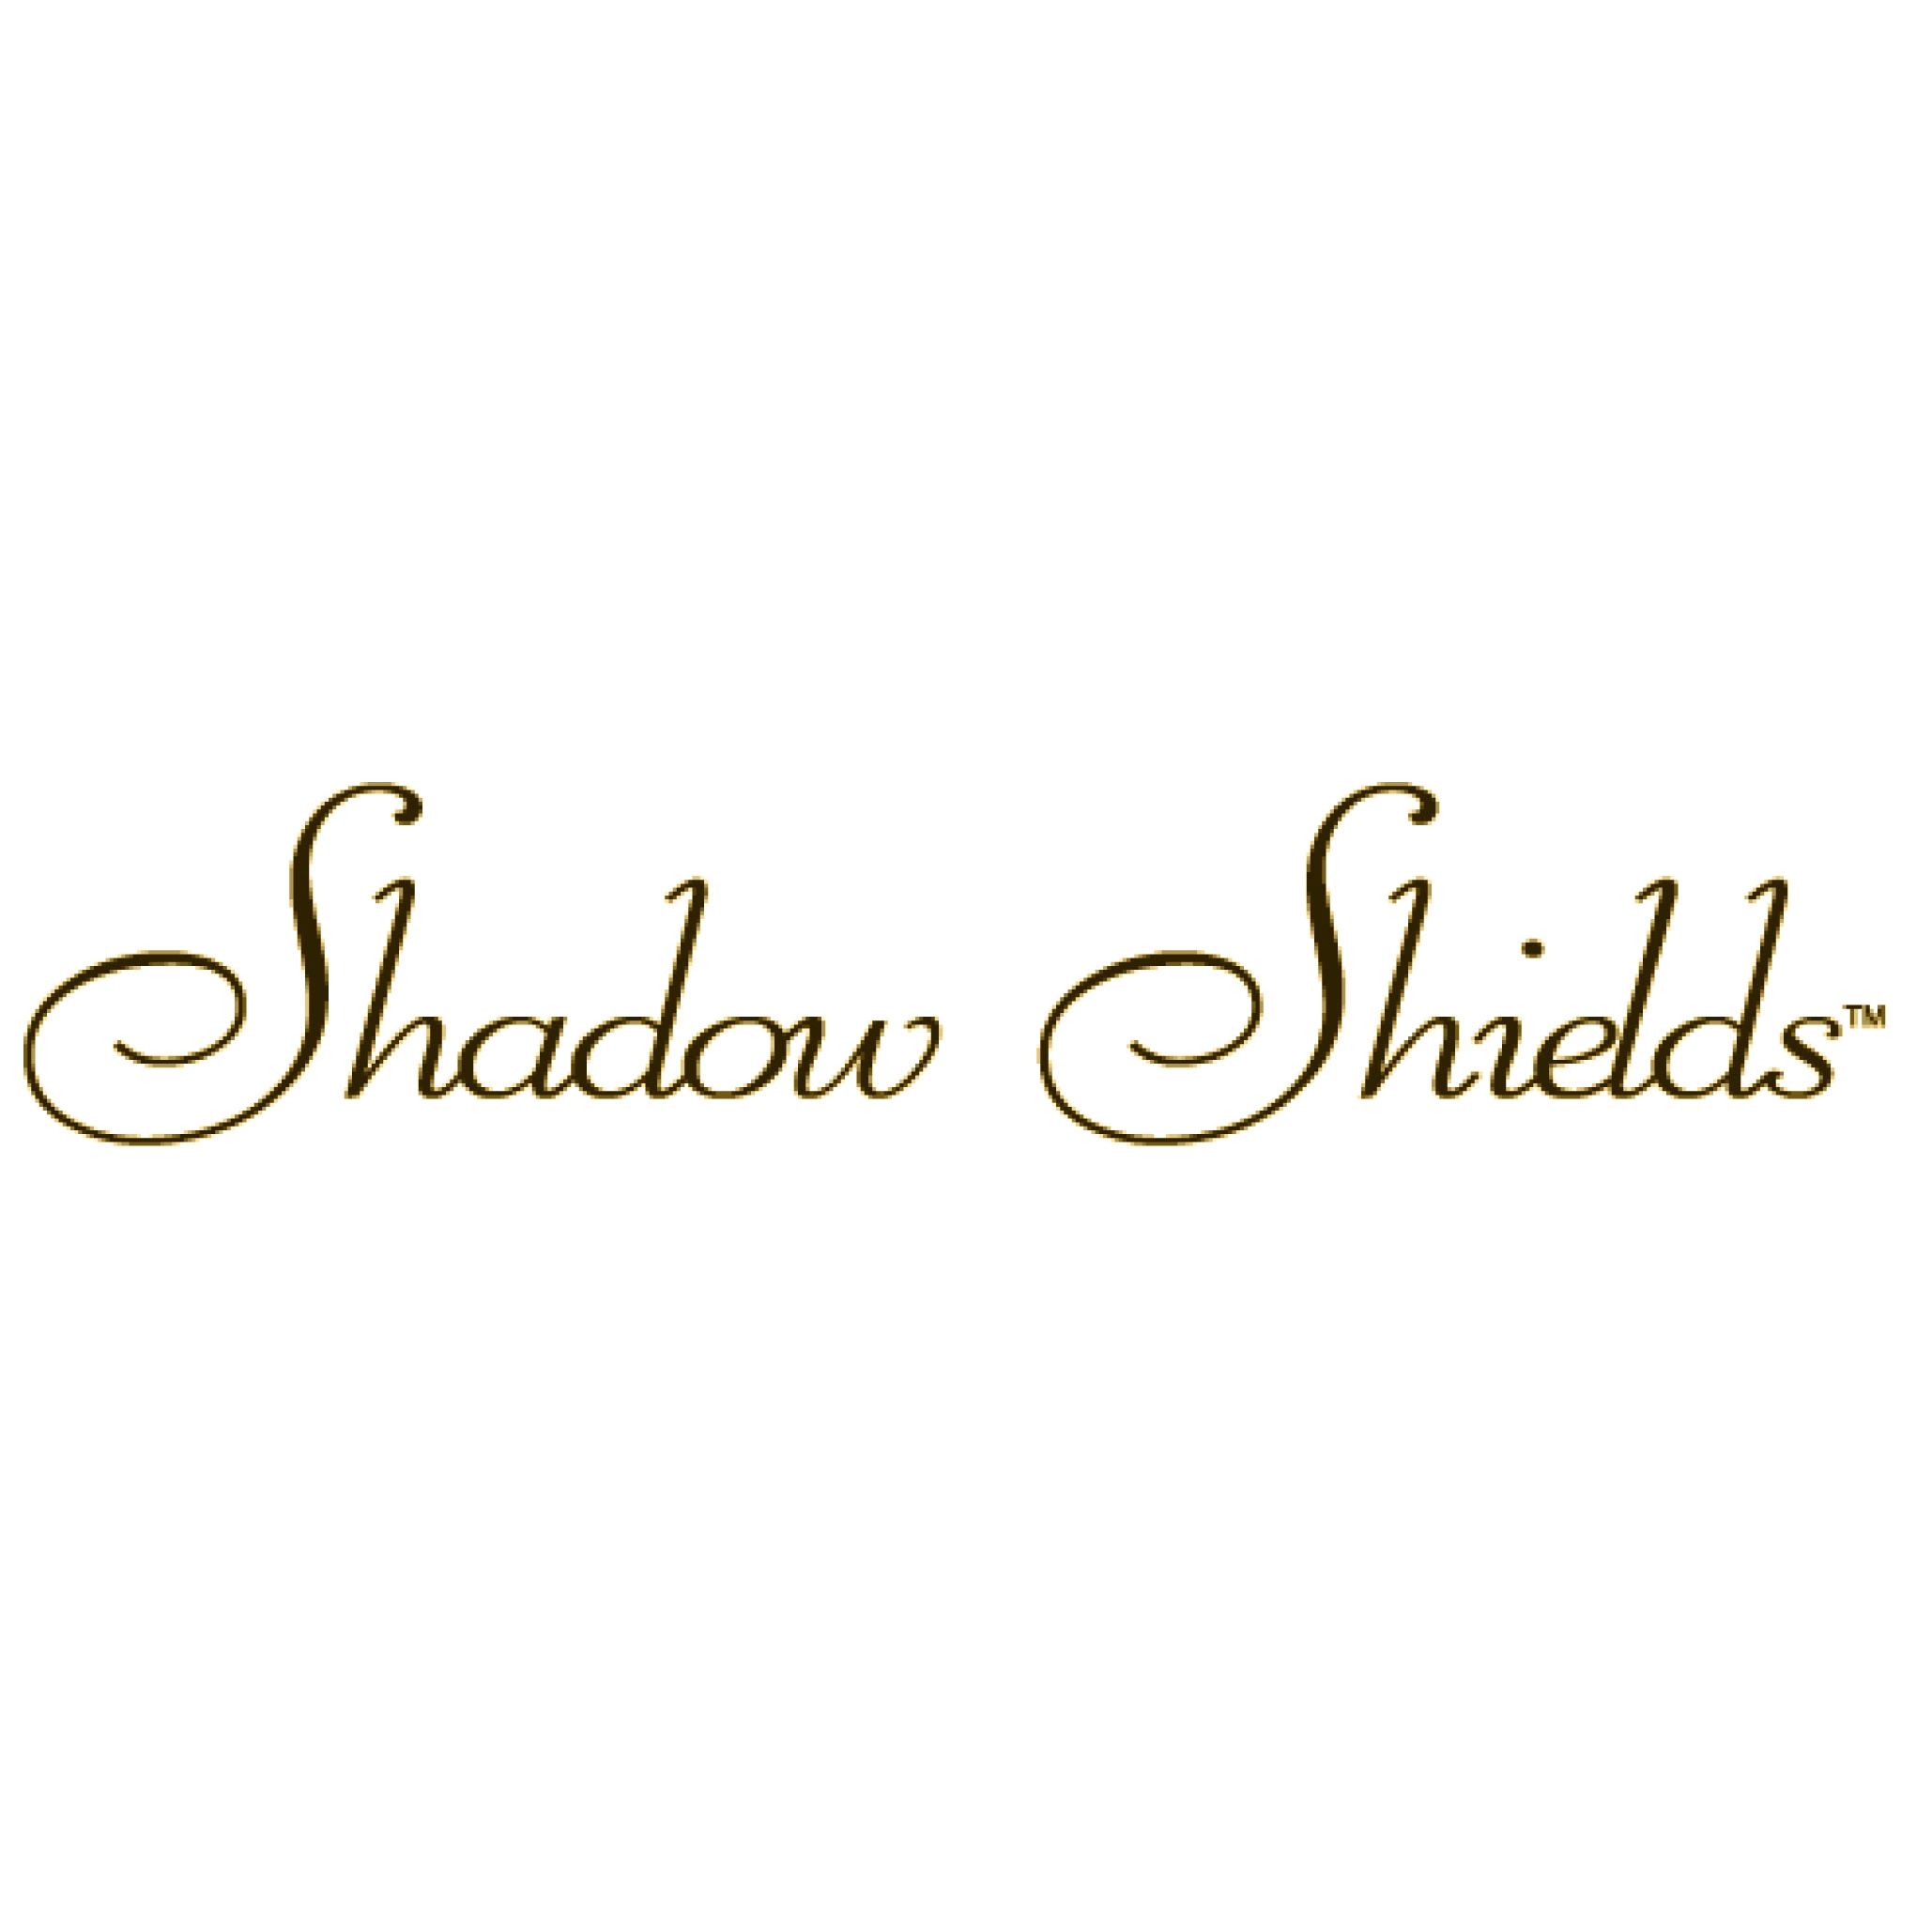 Shadow Shields